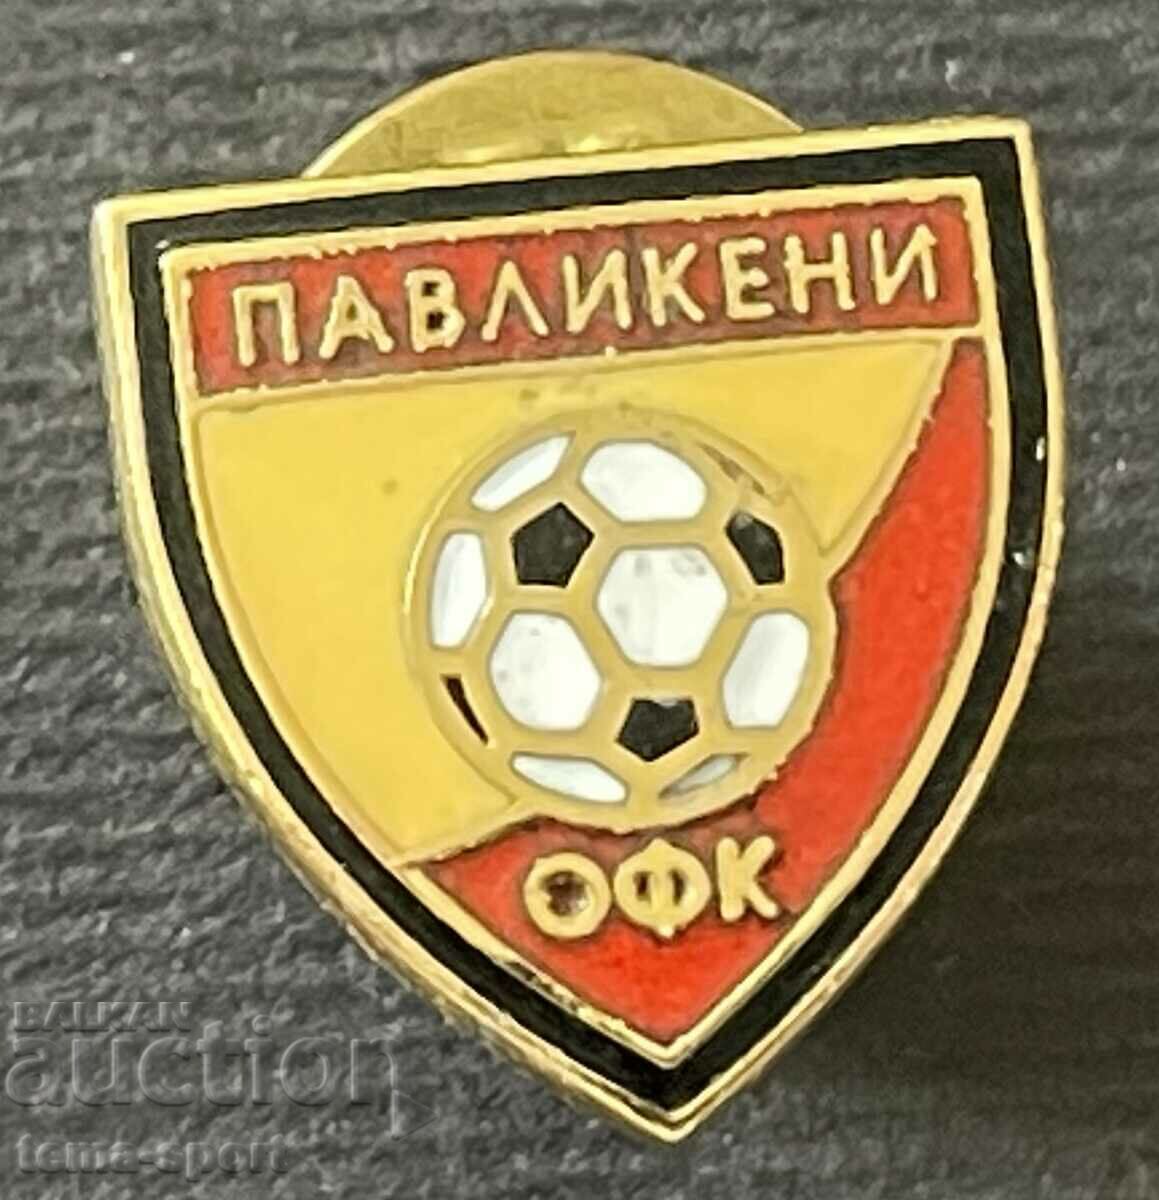 719 България знак Футболен клуб Павликени емайл